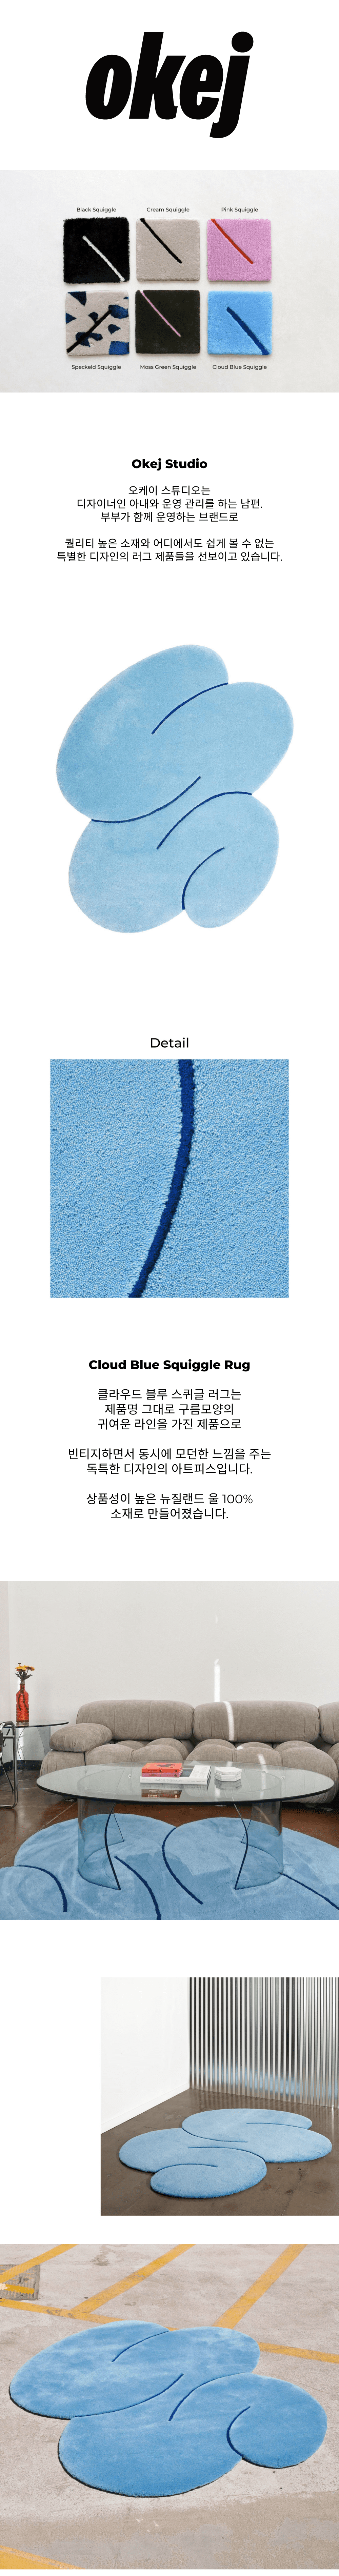 Cloud_170353.png